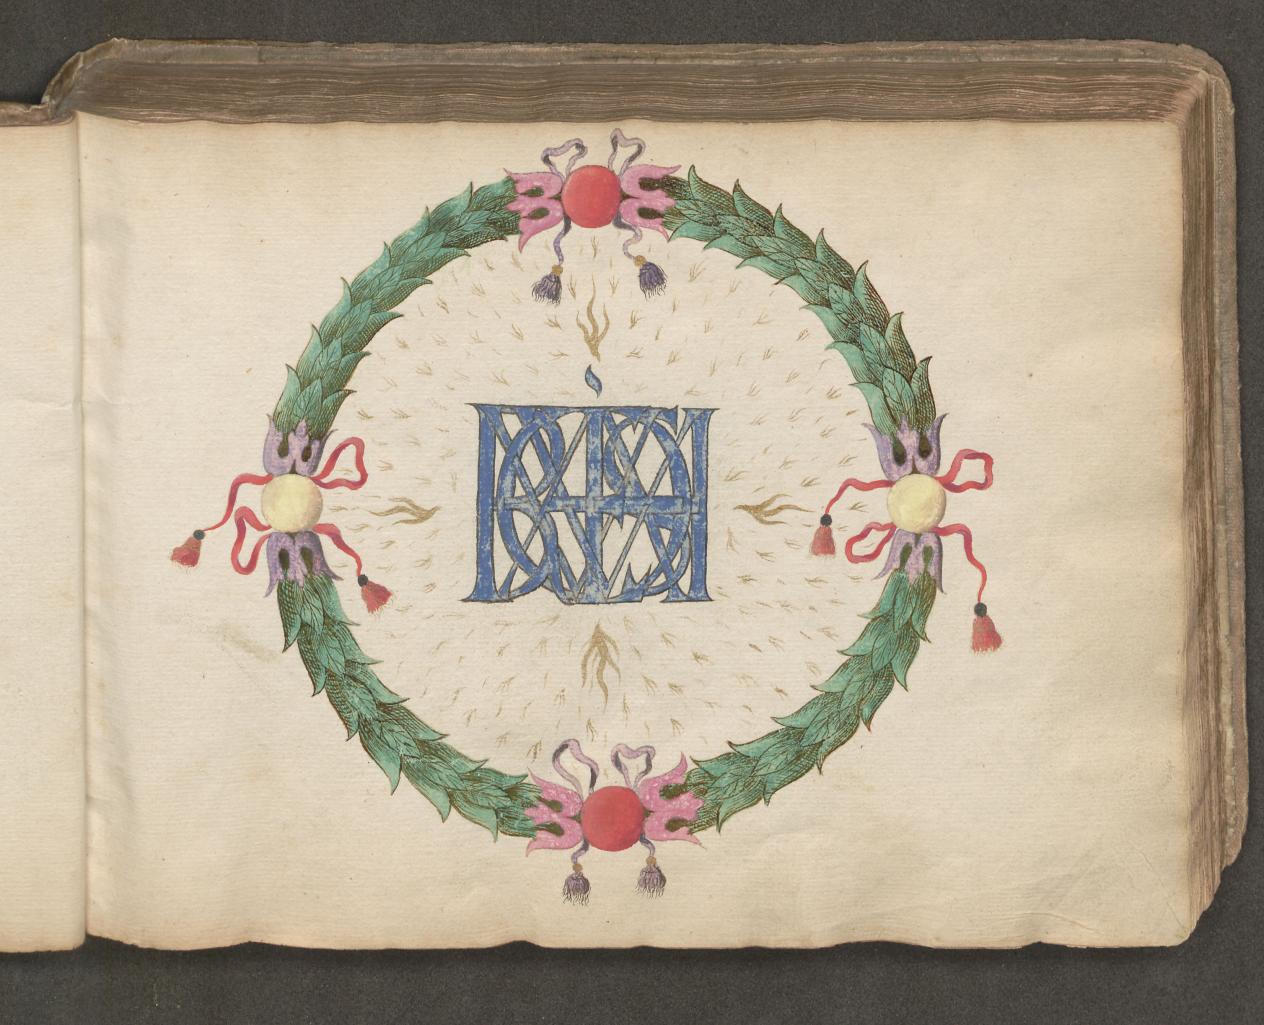 Lauwerkrans met monogram namen verloofden uit 17de-eeuws liedboek